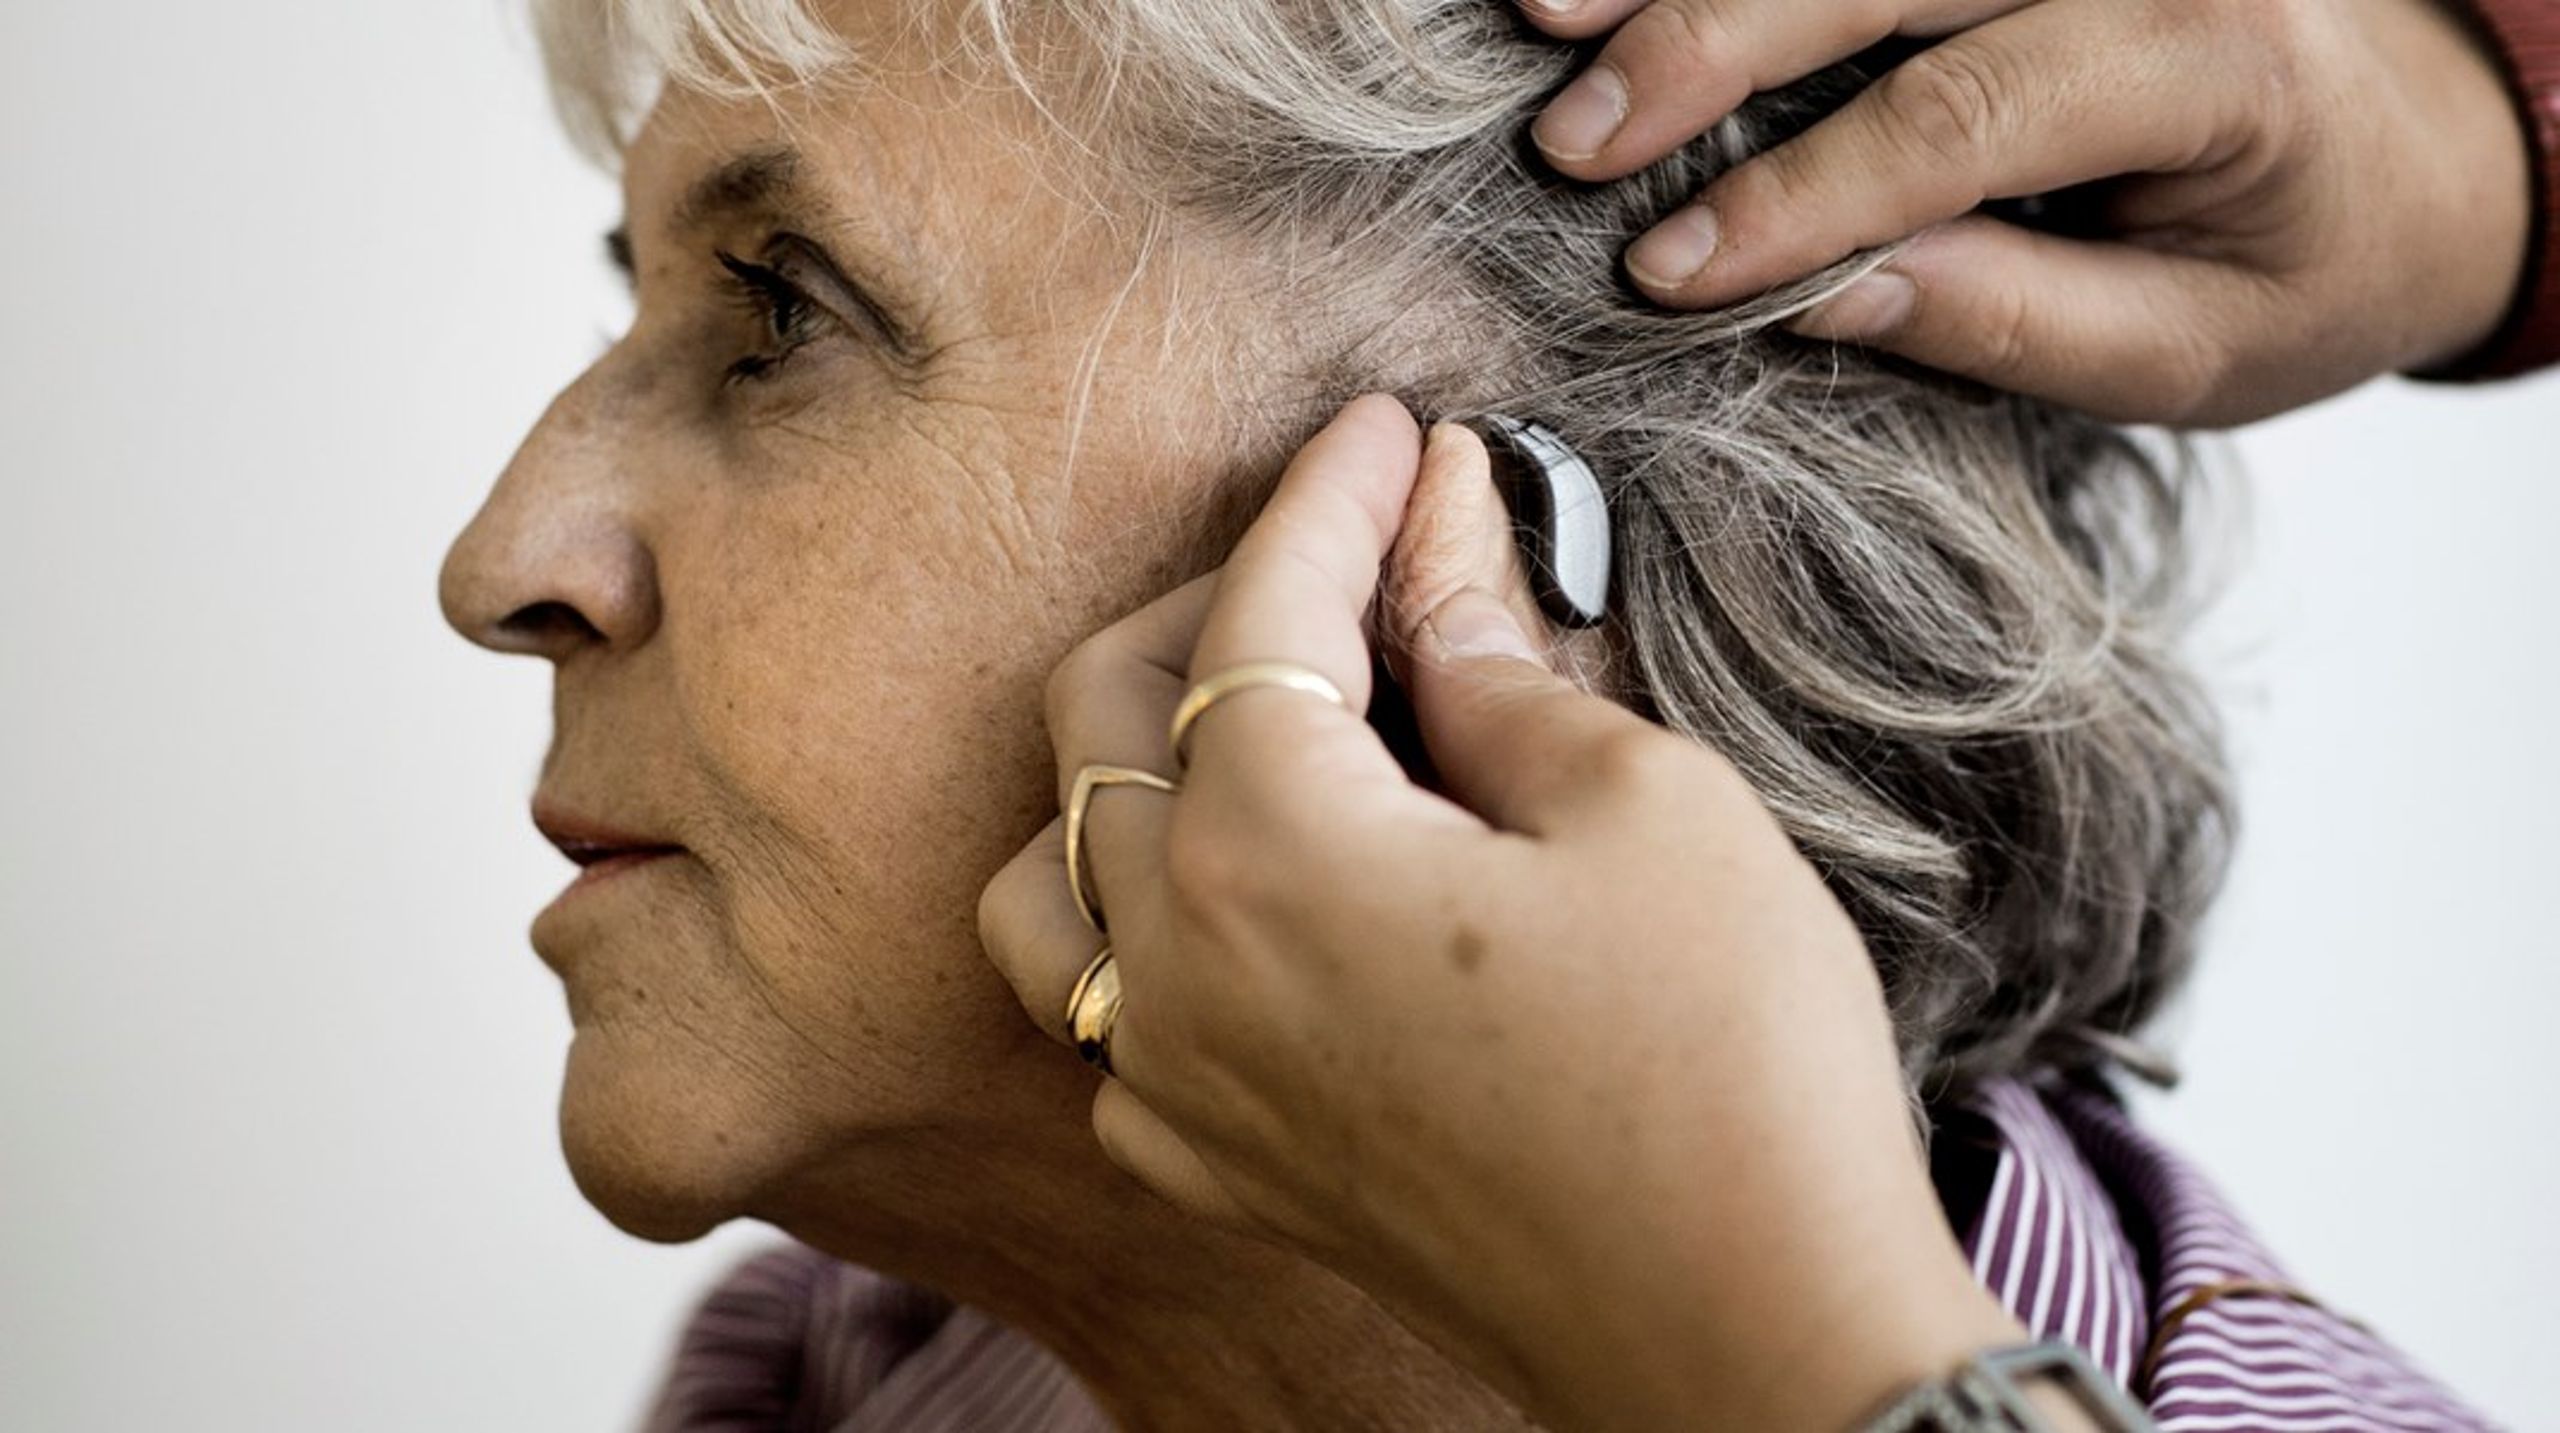 Der er mange gode grunde til at indføre en&nbsp;autorisation for sundhedspersonalet, der kan håndtere de voksende høreudfordringer i takt med, at vi bliver ældre, og at der stadig kommer flere patienter med høretab, skriver medlemmerne af Arbejdsgruppen for Fremtidens Hørerehabilitering.&nbsp;